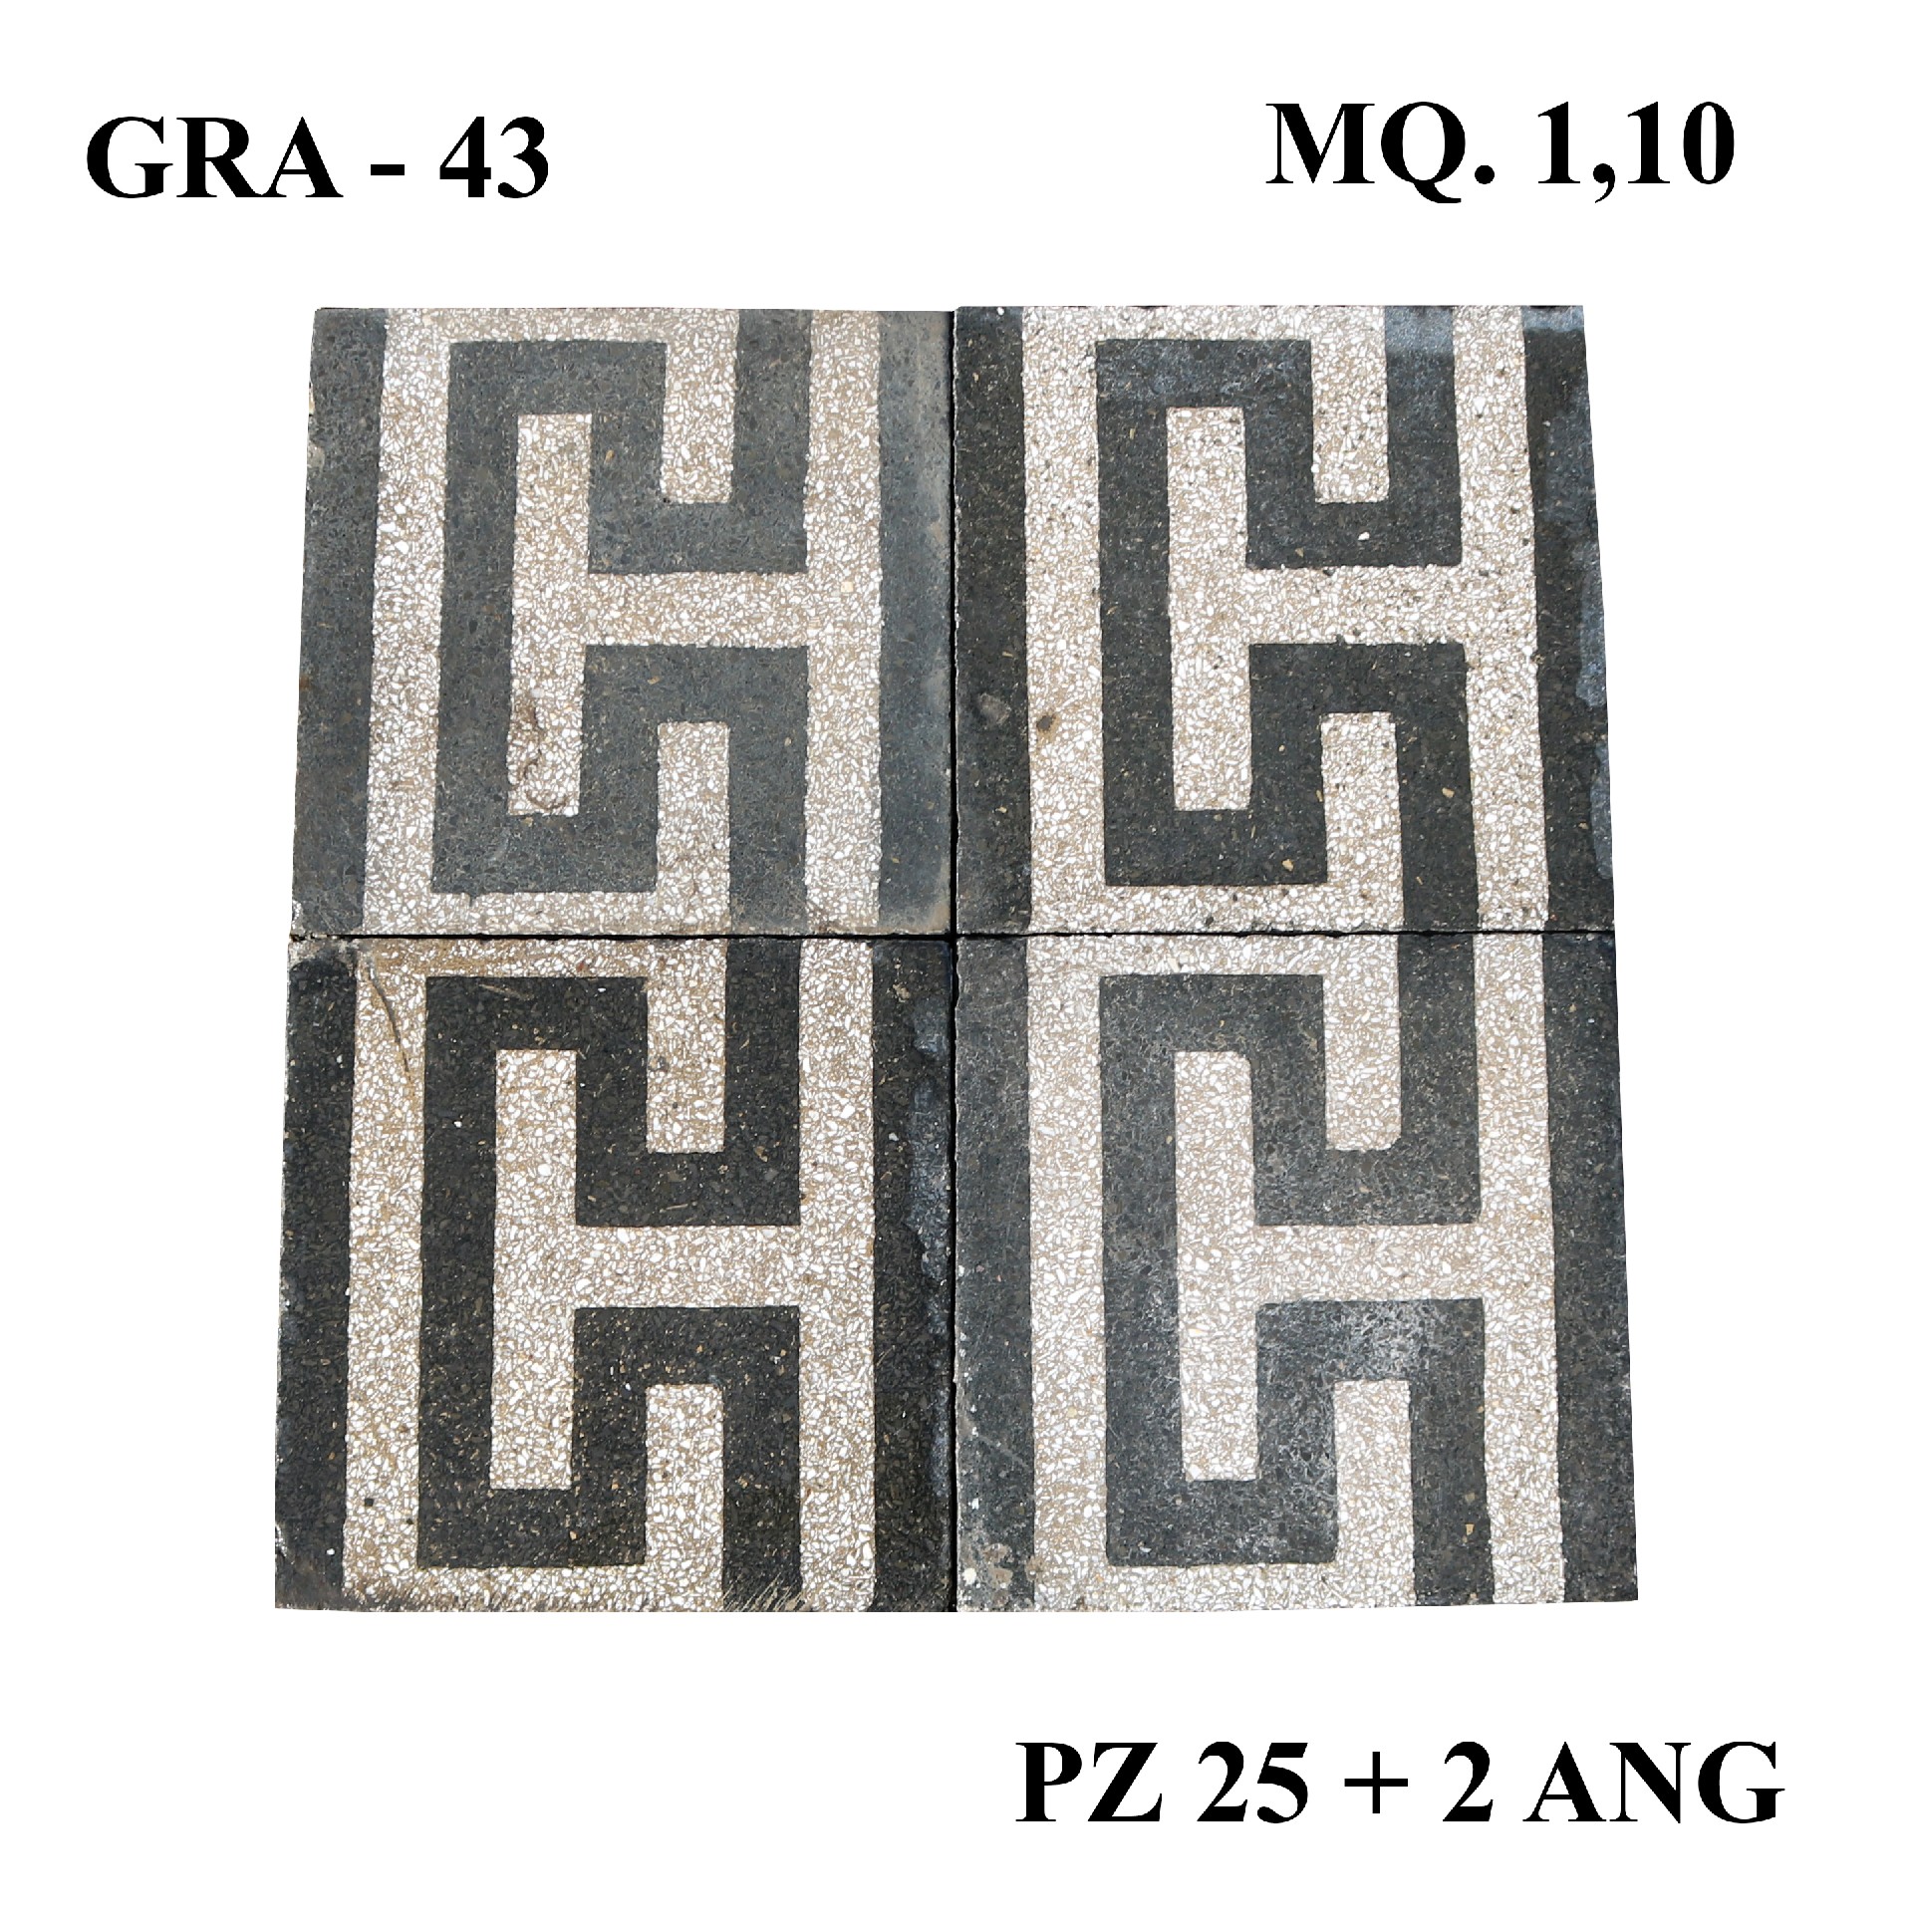 Antica pavimentazione in graniglia cm20x20 - Cementine e Graniglie - Pavimentazioni Antiche - Prodotti - Antichità Fiorillo